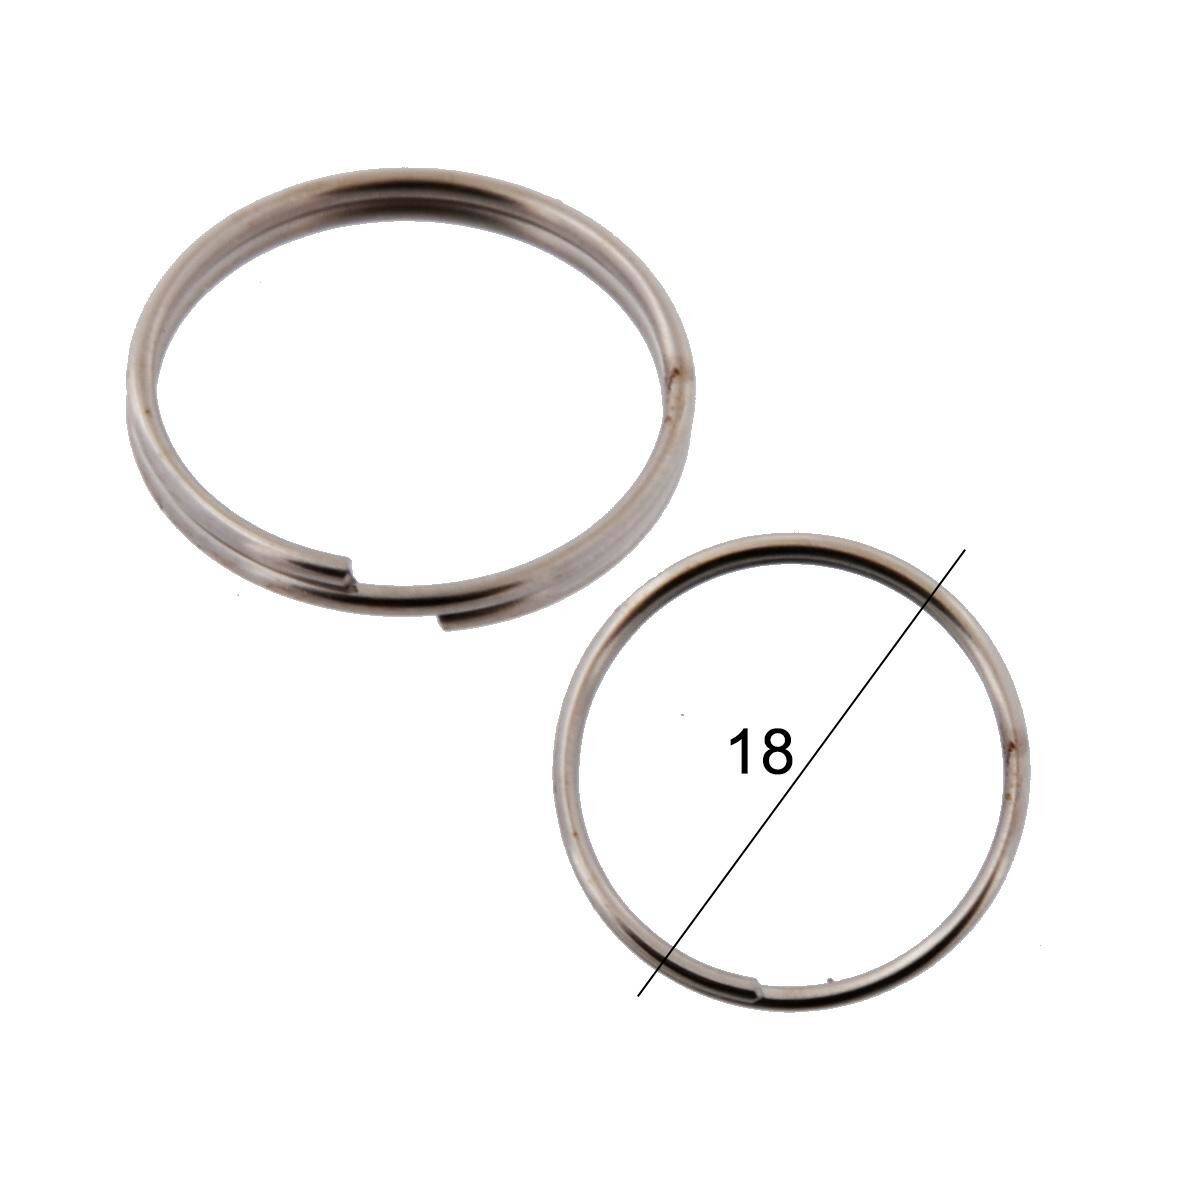 Key rings for keys WIS normal diameter 18mm